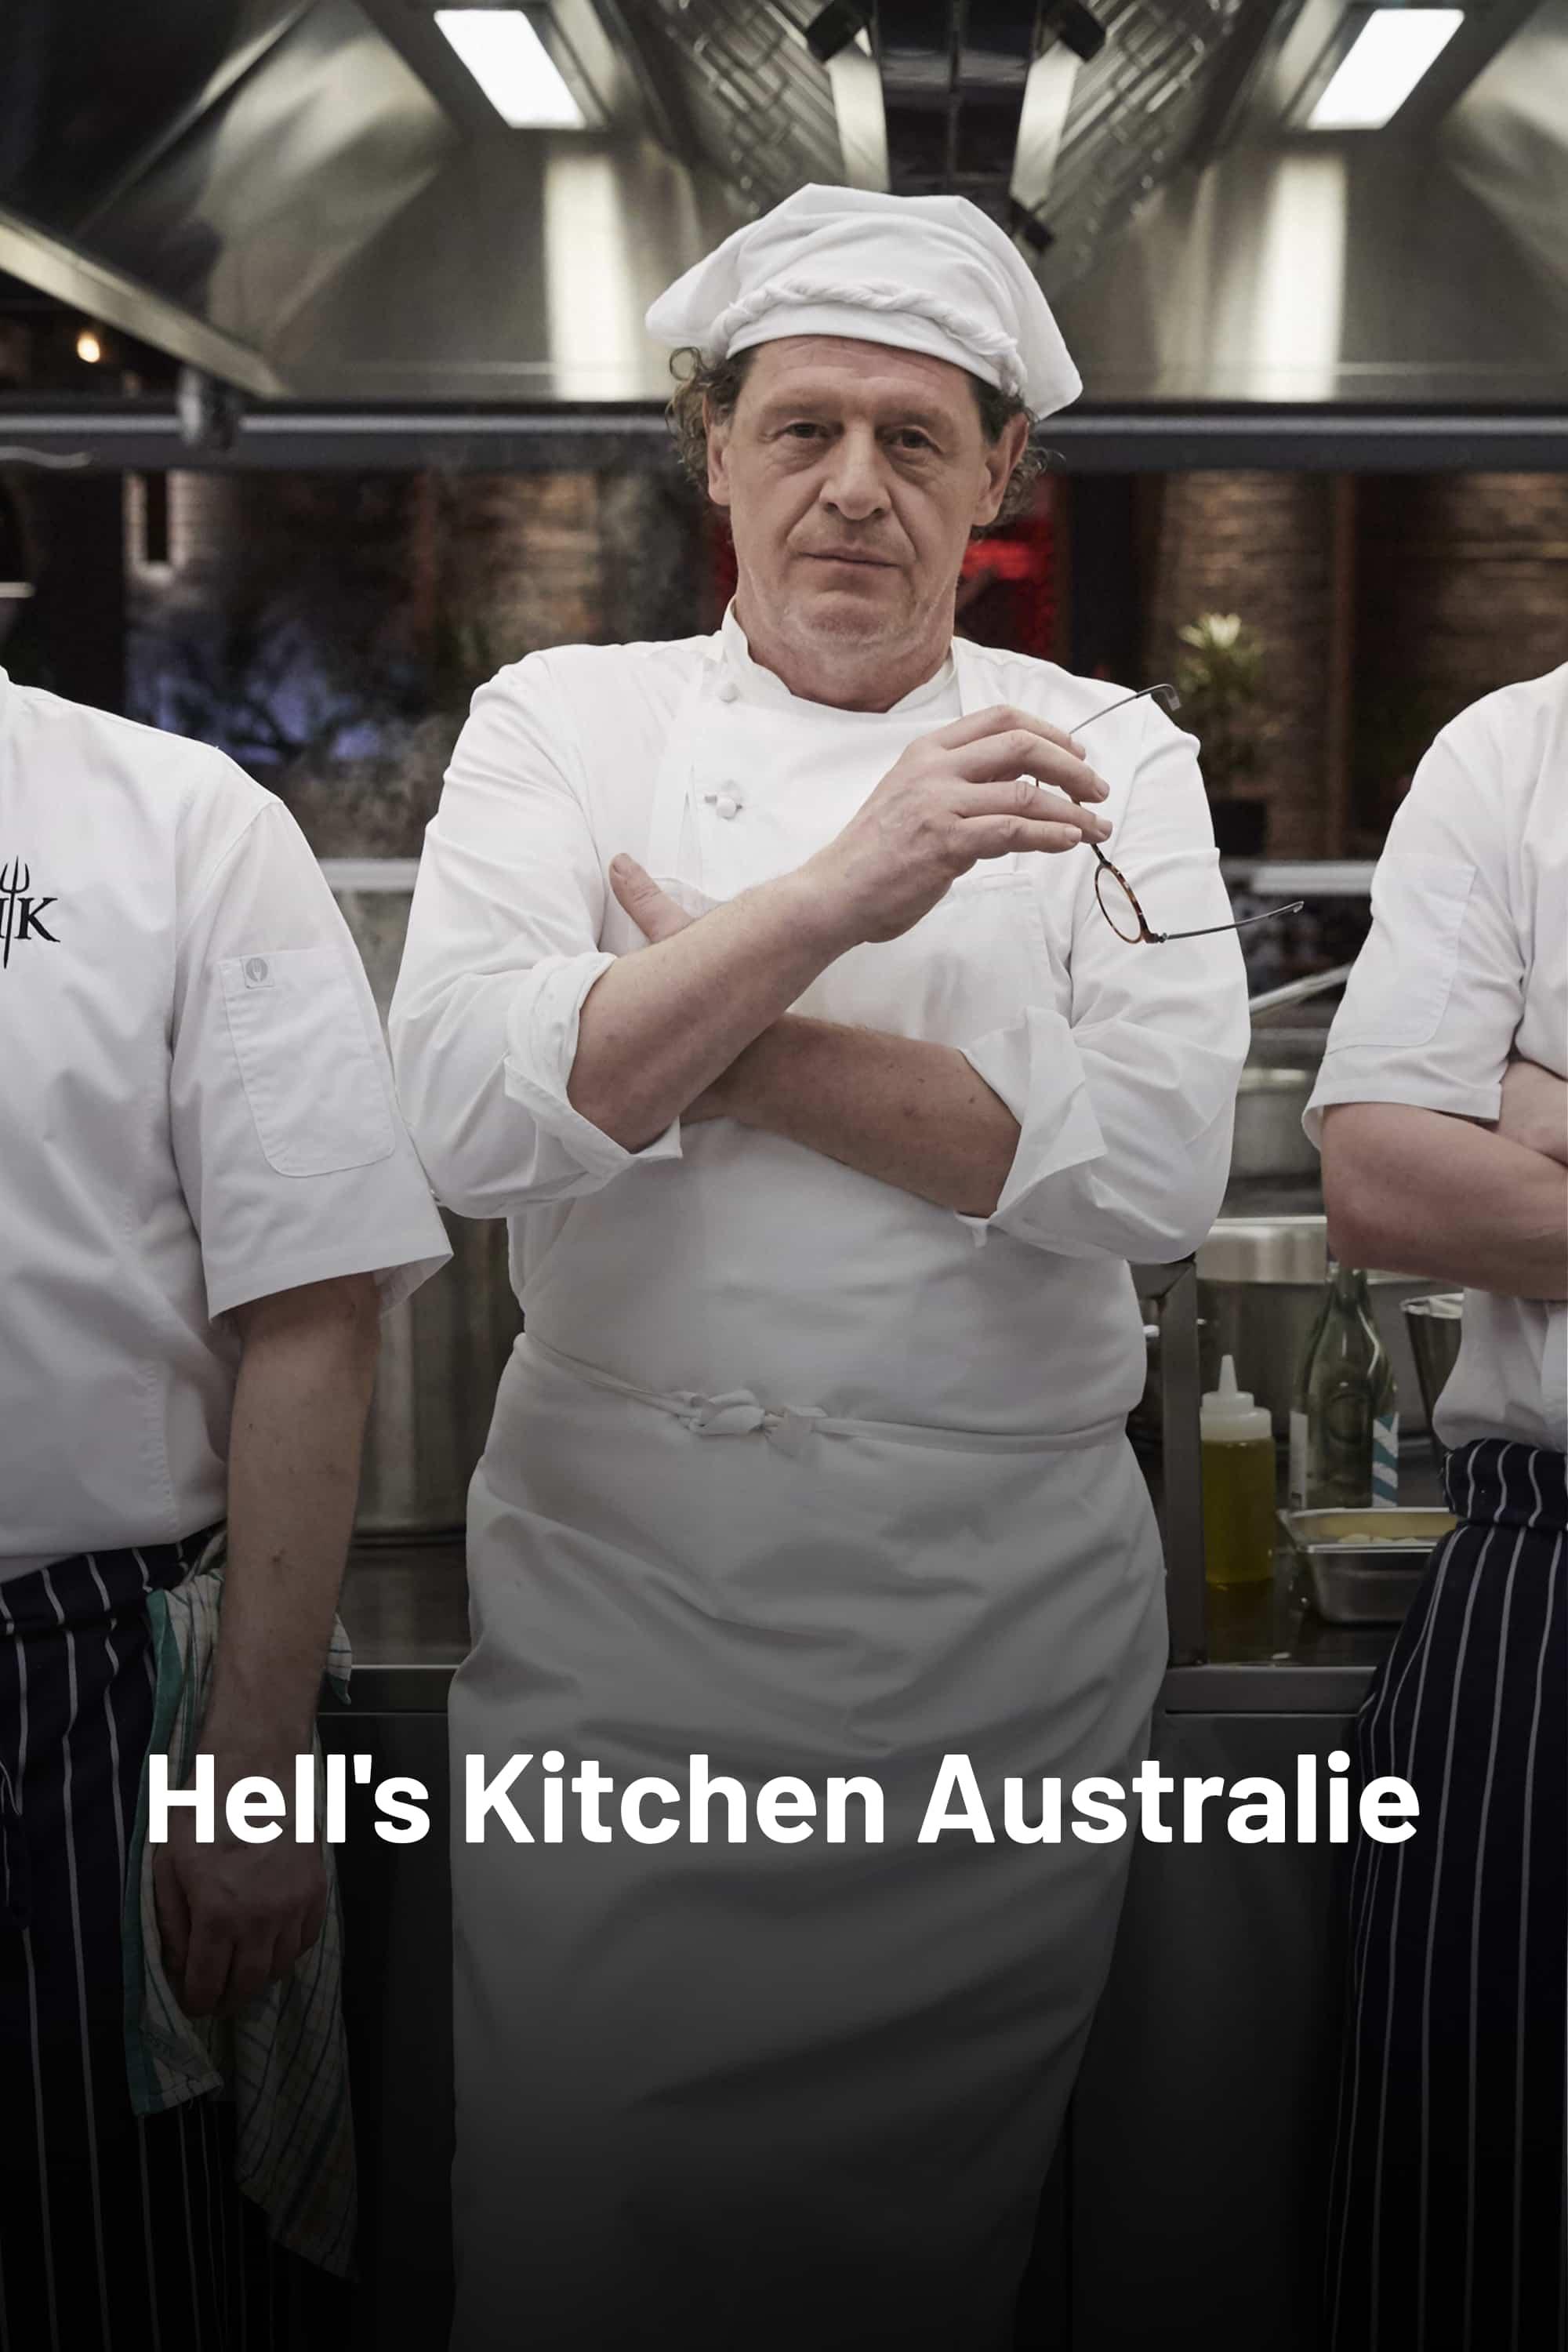 Hell's Kitchen Australie